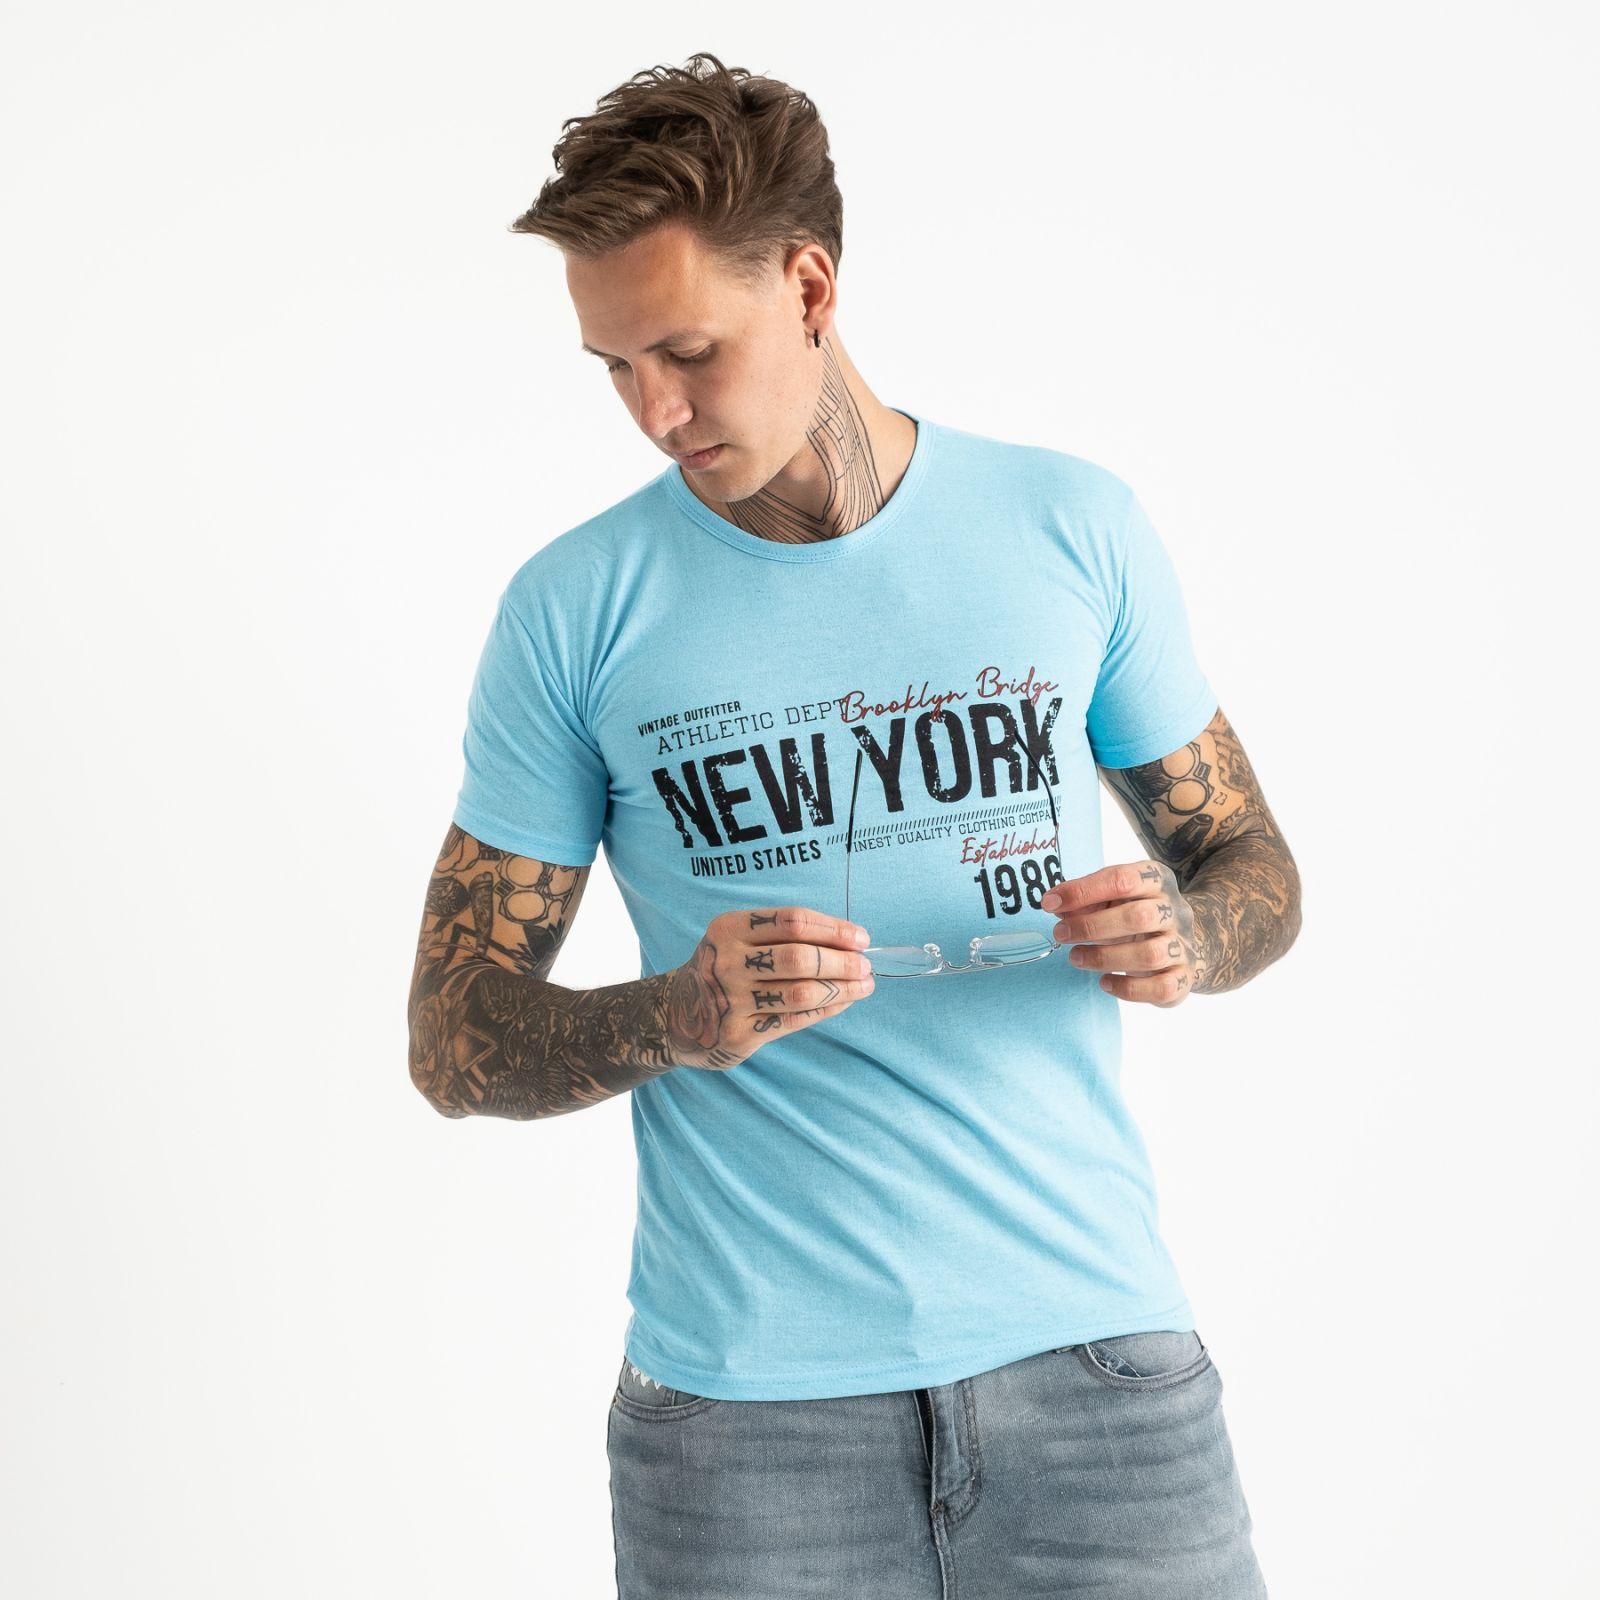 2615-13 голубая футболка мужская с принтом (4 ед. размеры: M.L.XL.2XL)